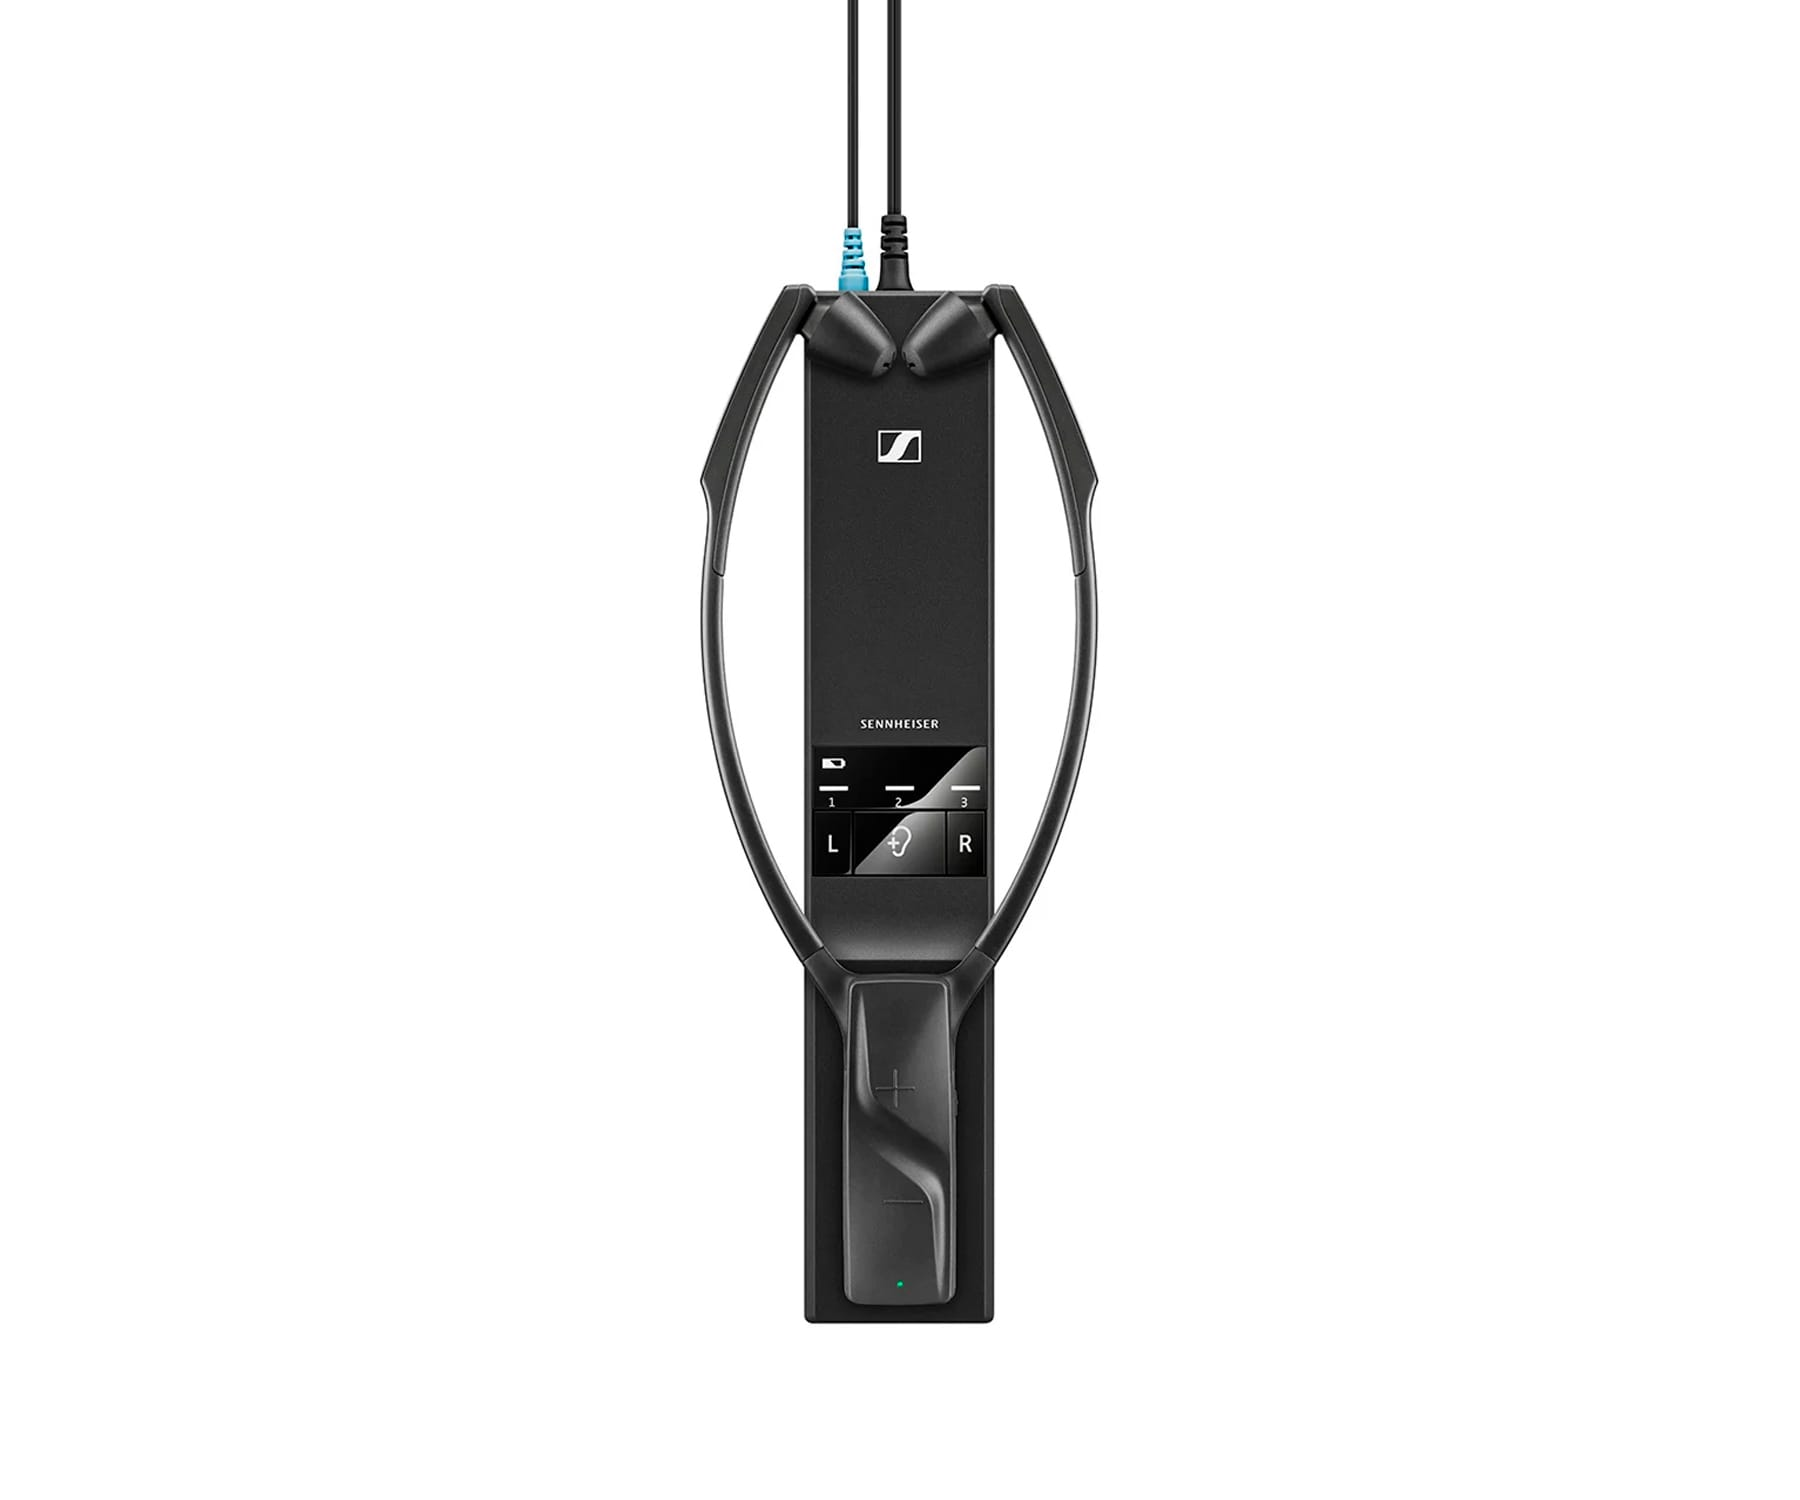 RS SENNHEISER Bluetooth Kopfhörer 5200, Kinnbügel Schwarz